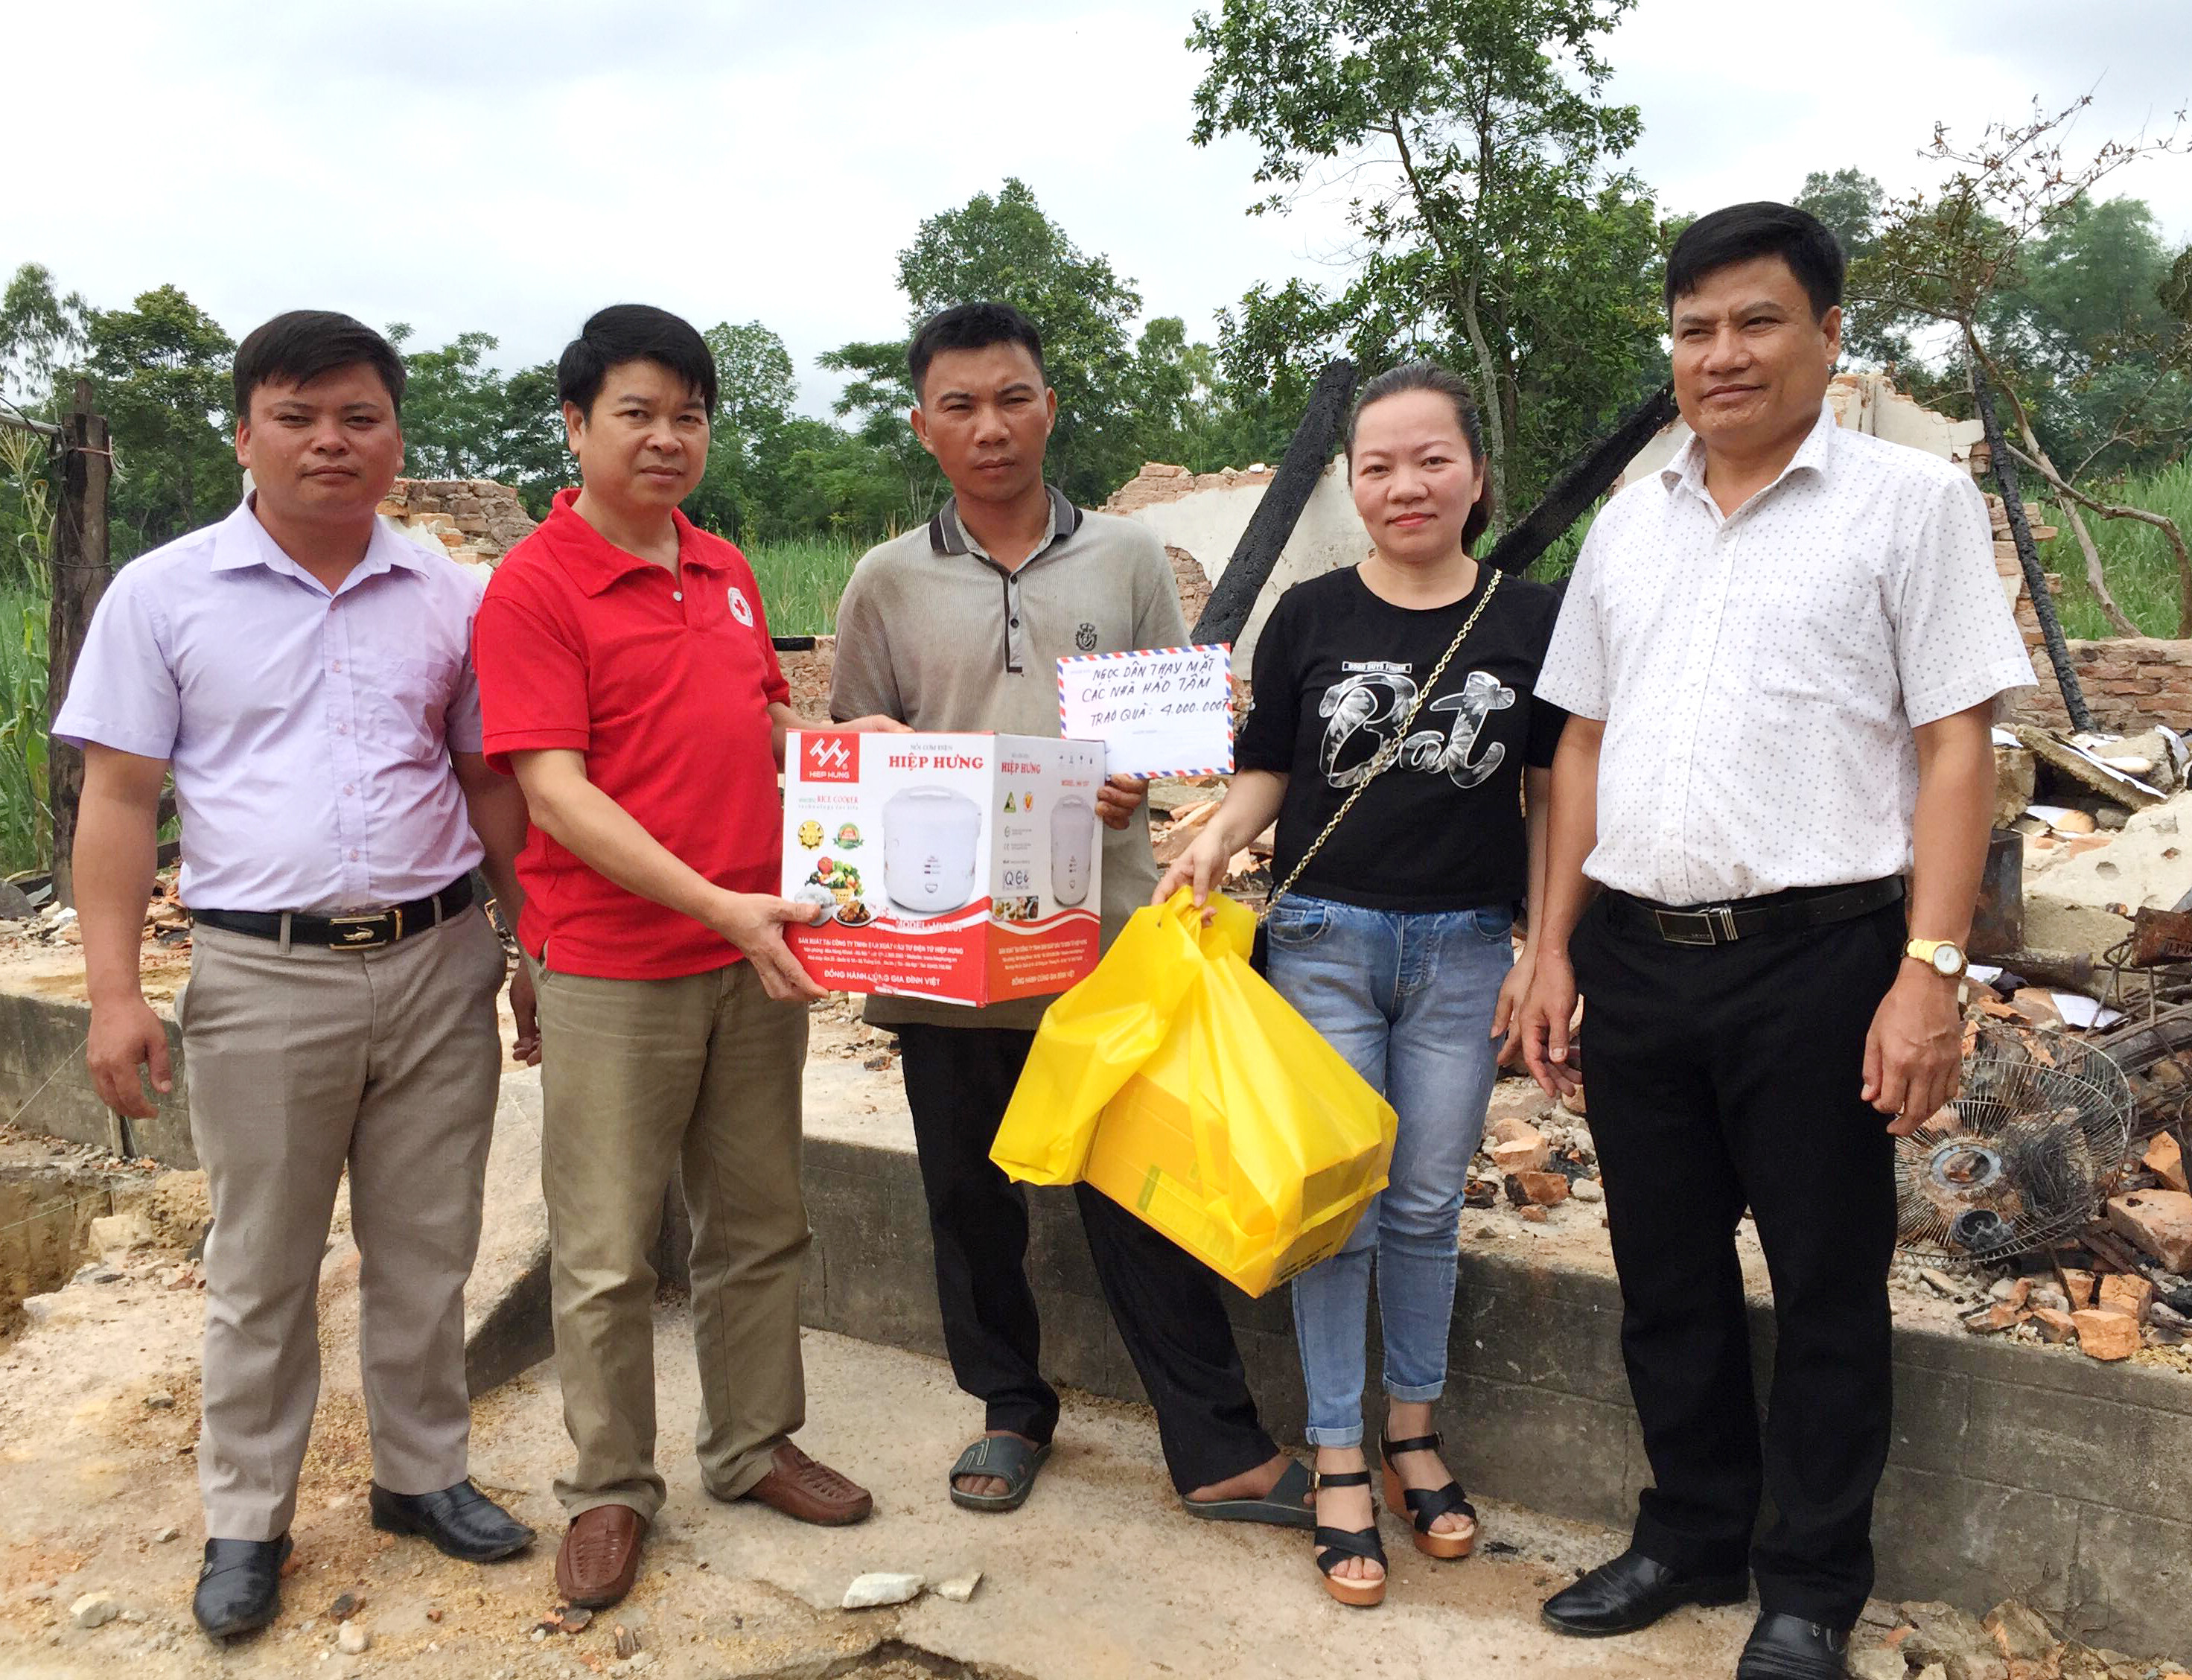 Đại diện Hội chữ thập đỏ huyện và nhà thiện nguyện Ngọc Dân đã trao tiền và quà cho gia đình anh Hùng